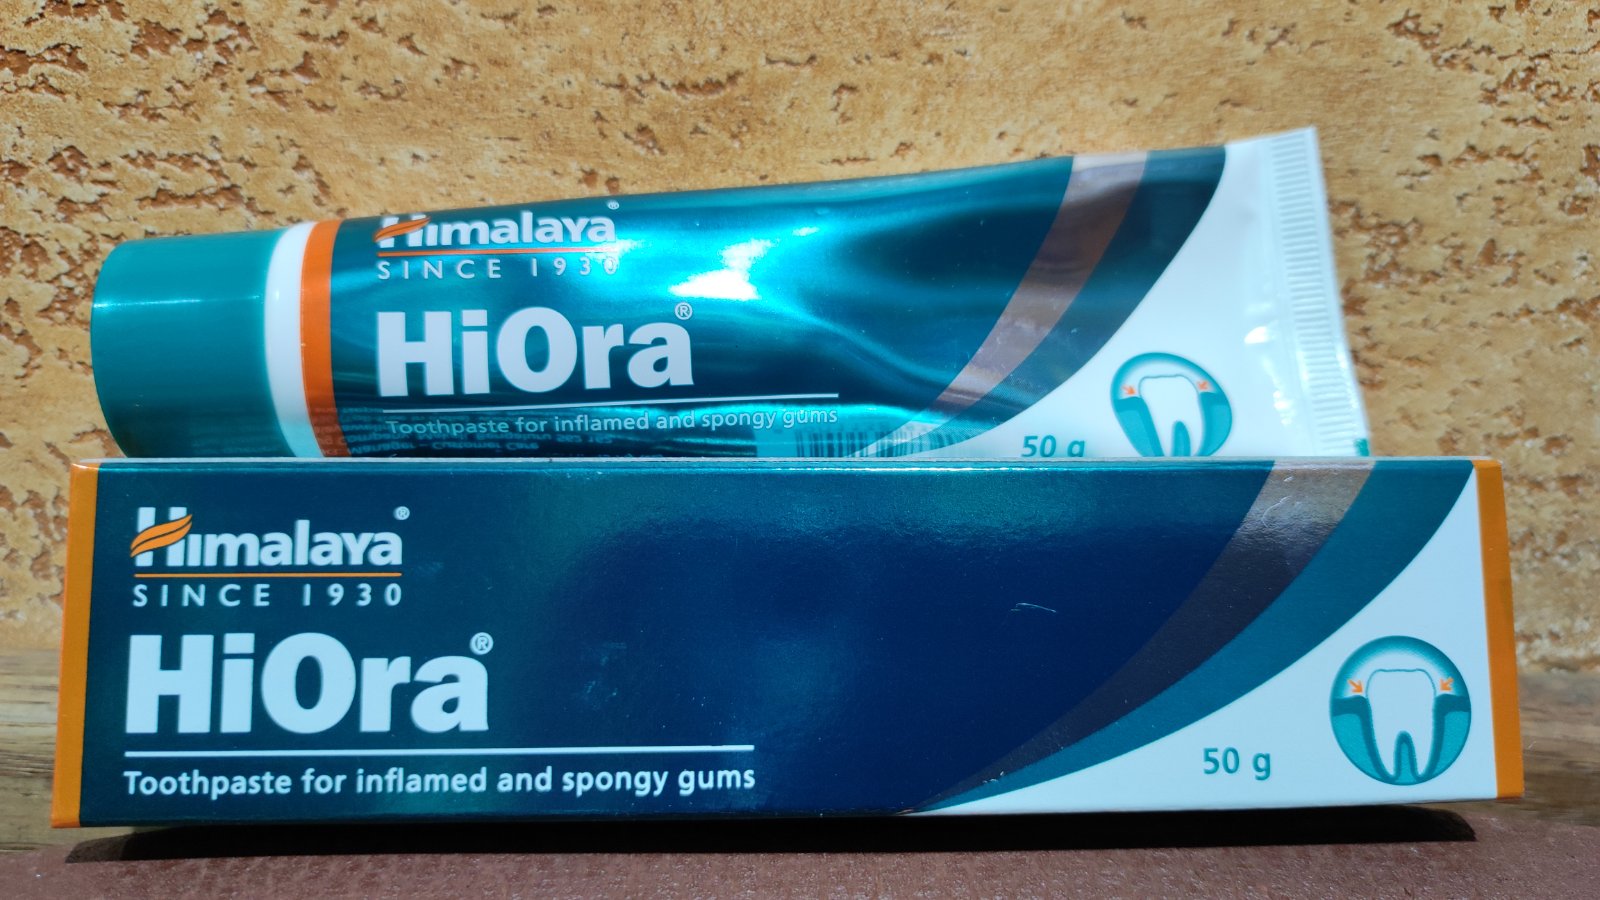 Зубная паста Хиора 50 гр Hiora toothpaste Himalaya Чувствительные зубы Десна Гингивит Пародонтоз Комплексный уход за ротовой полостью